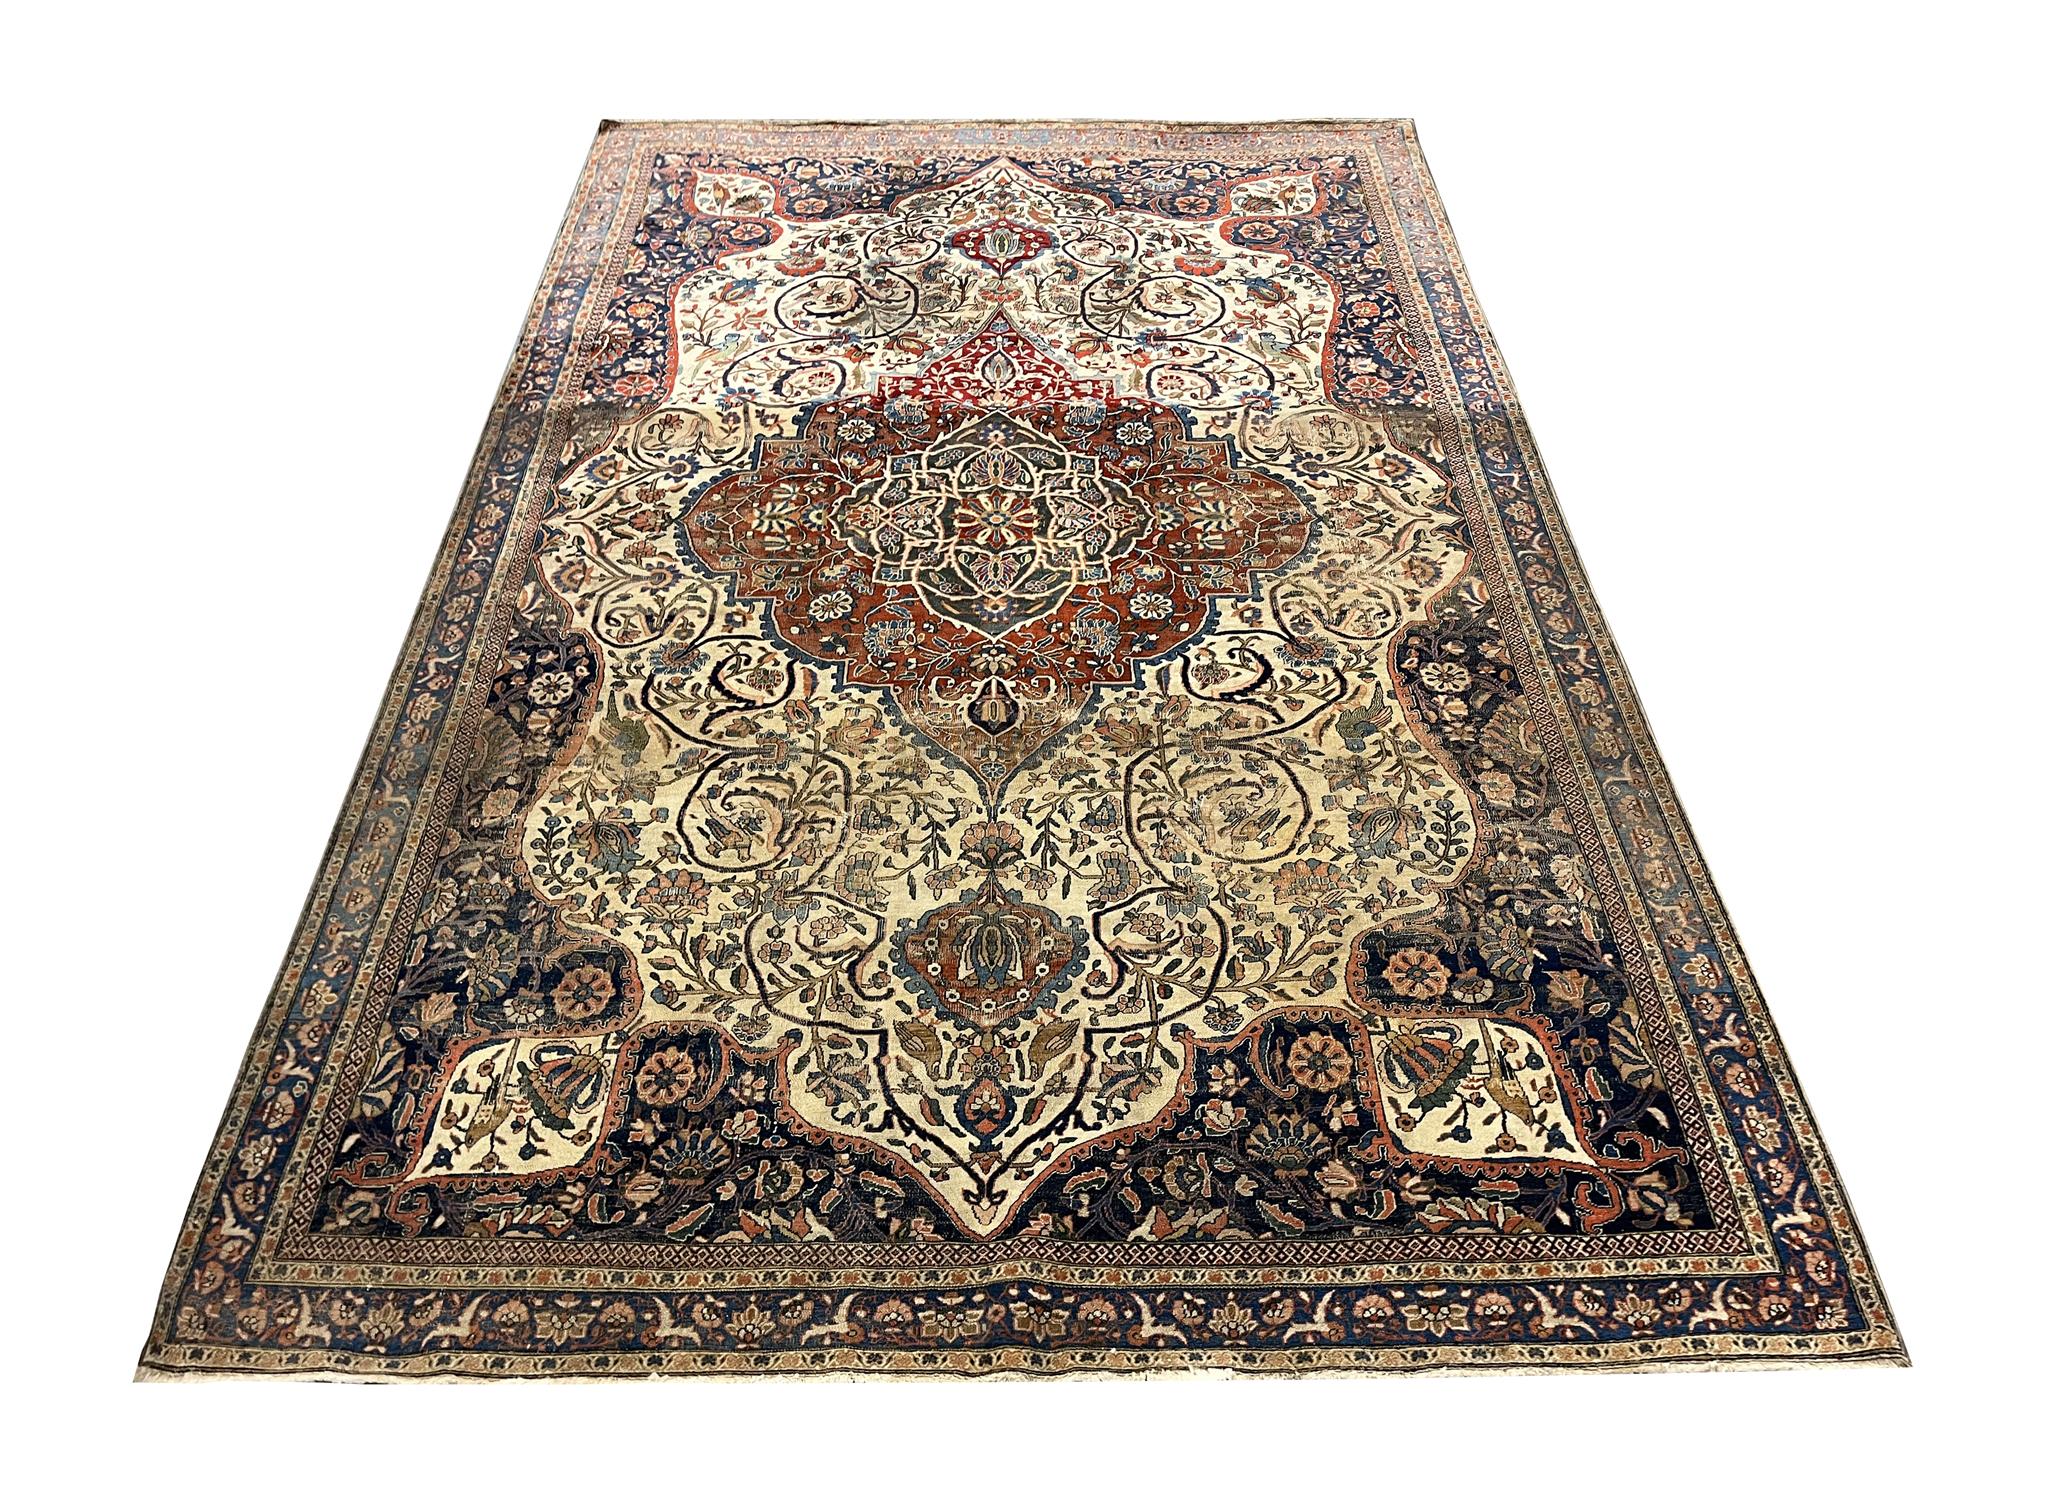 Ce tapis ancien est un magnifique tapis de zone tissé à la fin du 19e siècle, vers 1870. Il y a de légers signes d'usure sur ce tapis, mais cela ne fait qu'ajouter du caractère à l'esthétique générale de ce tapis Kashan Mohtasham. Son motif